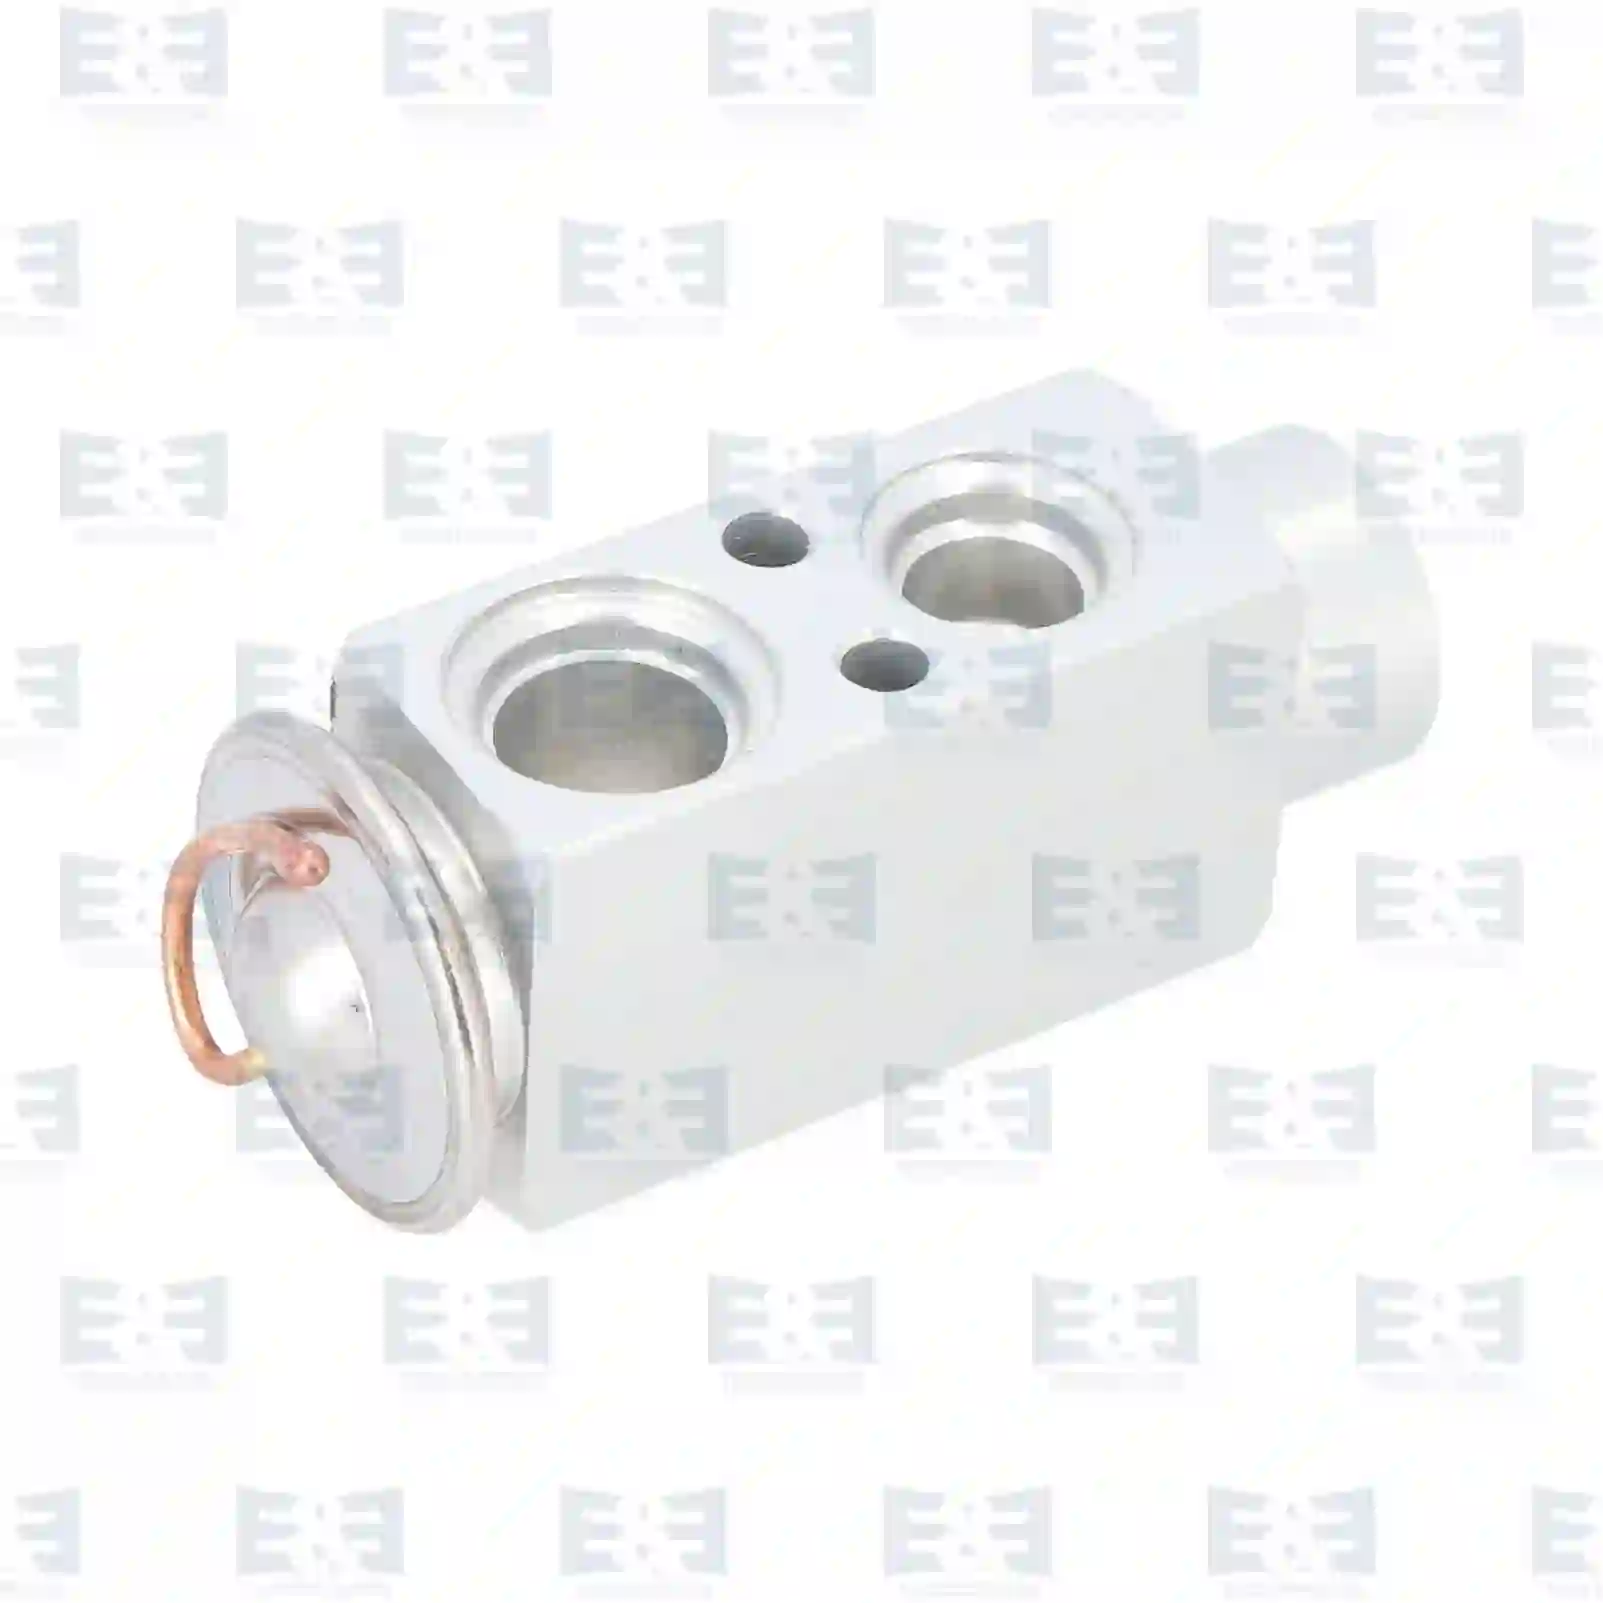  Expansion valve || E&E Truck Spare Parts | Truck Spare Parts, Auotomotive Spare Parts